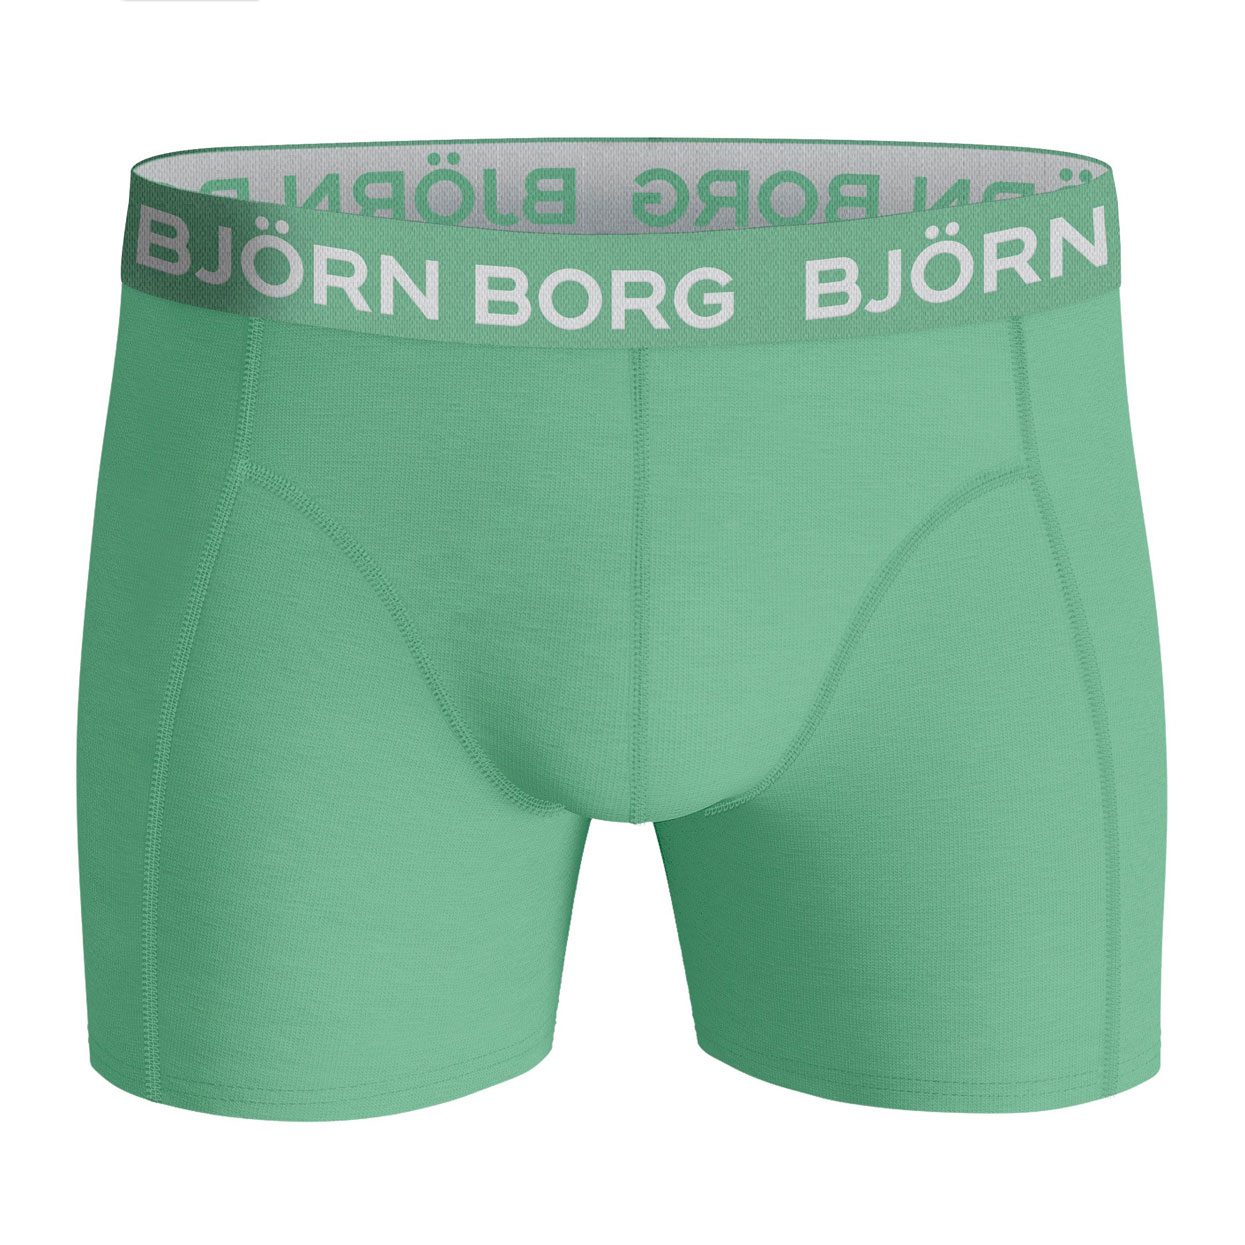 Bjorn-Borg-10002104-mp002-voor